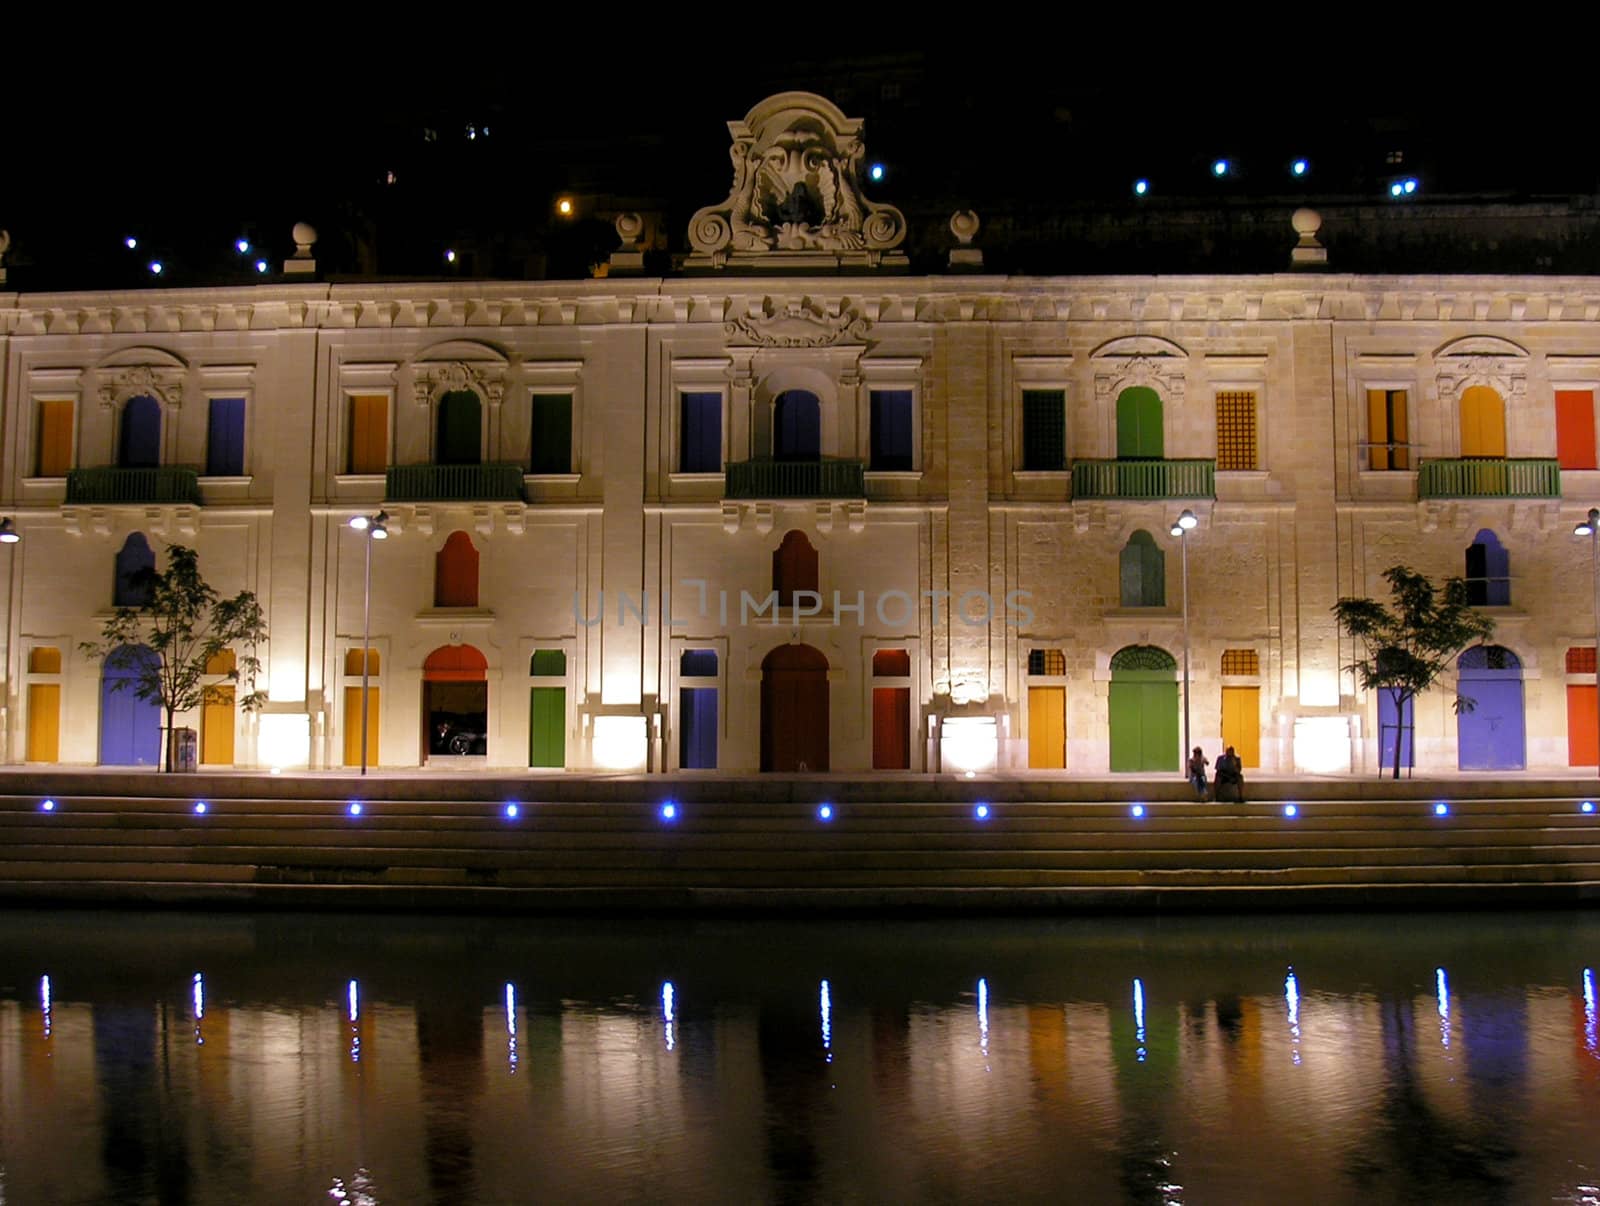 A nightshot of the waterfront in Valletta, Malta.